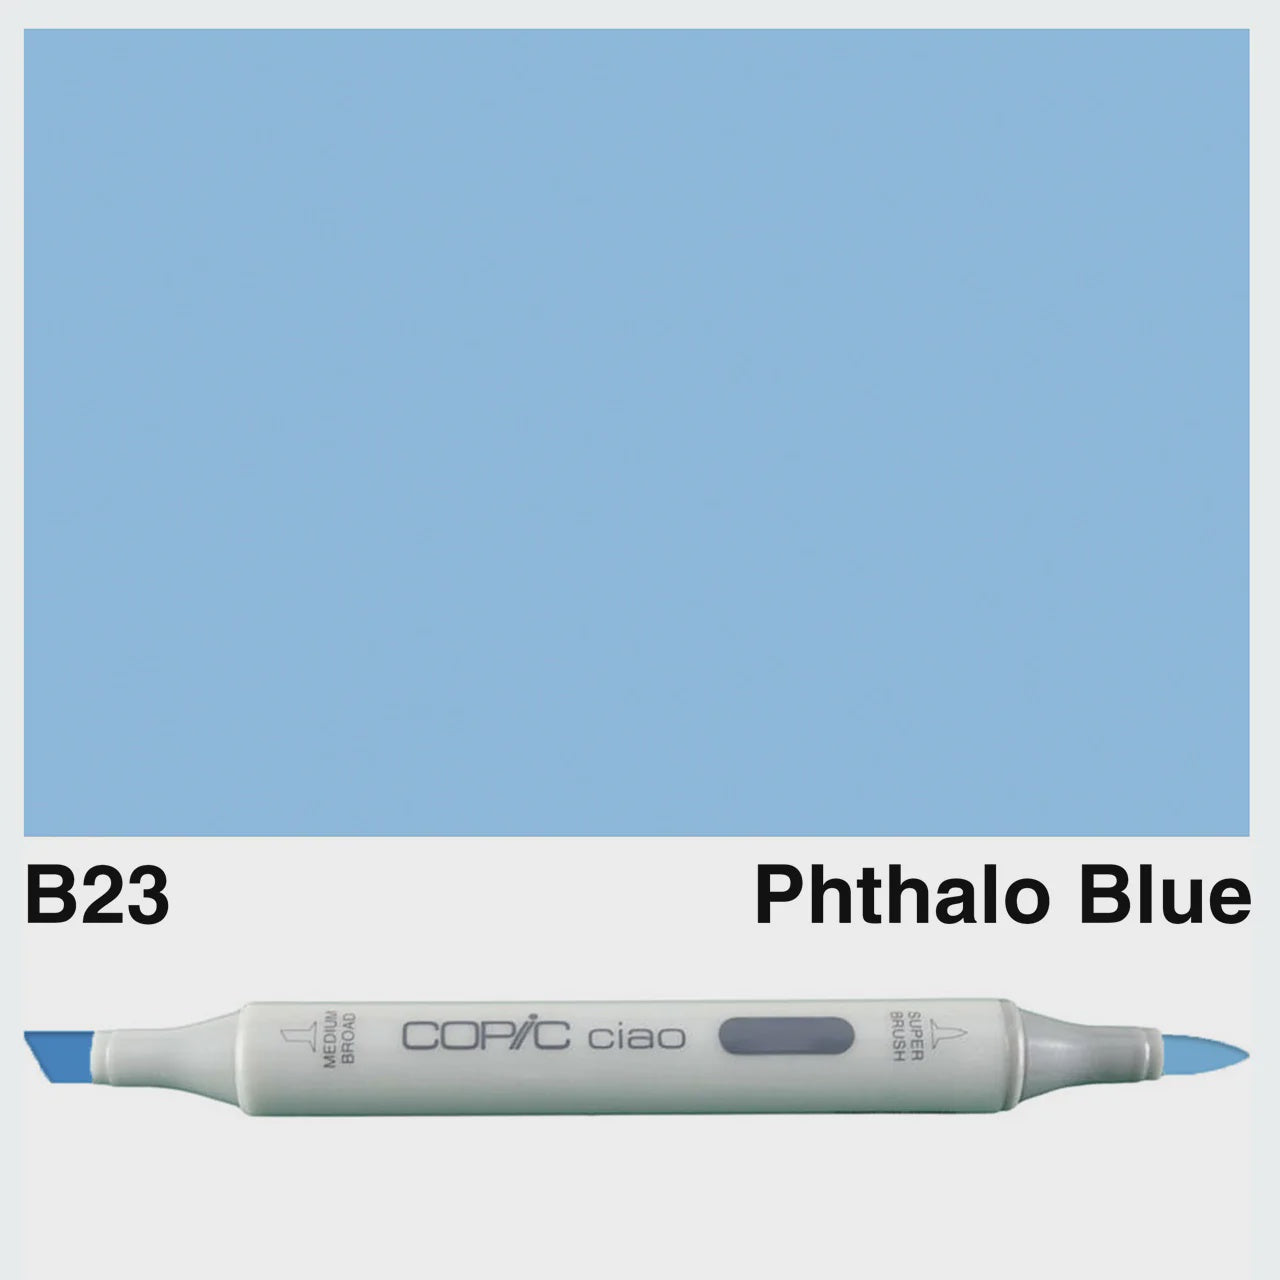 CIAO B23 PHTHALO BLUE